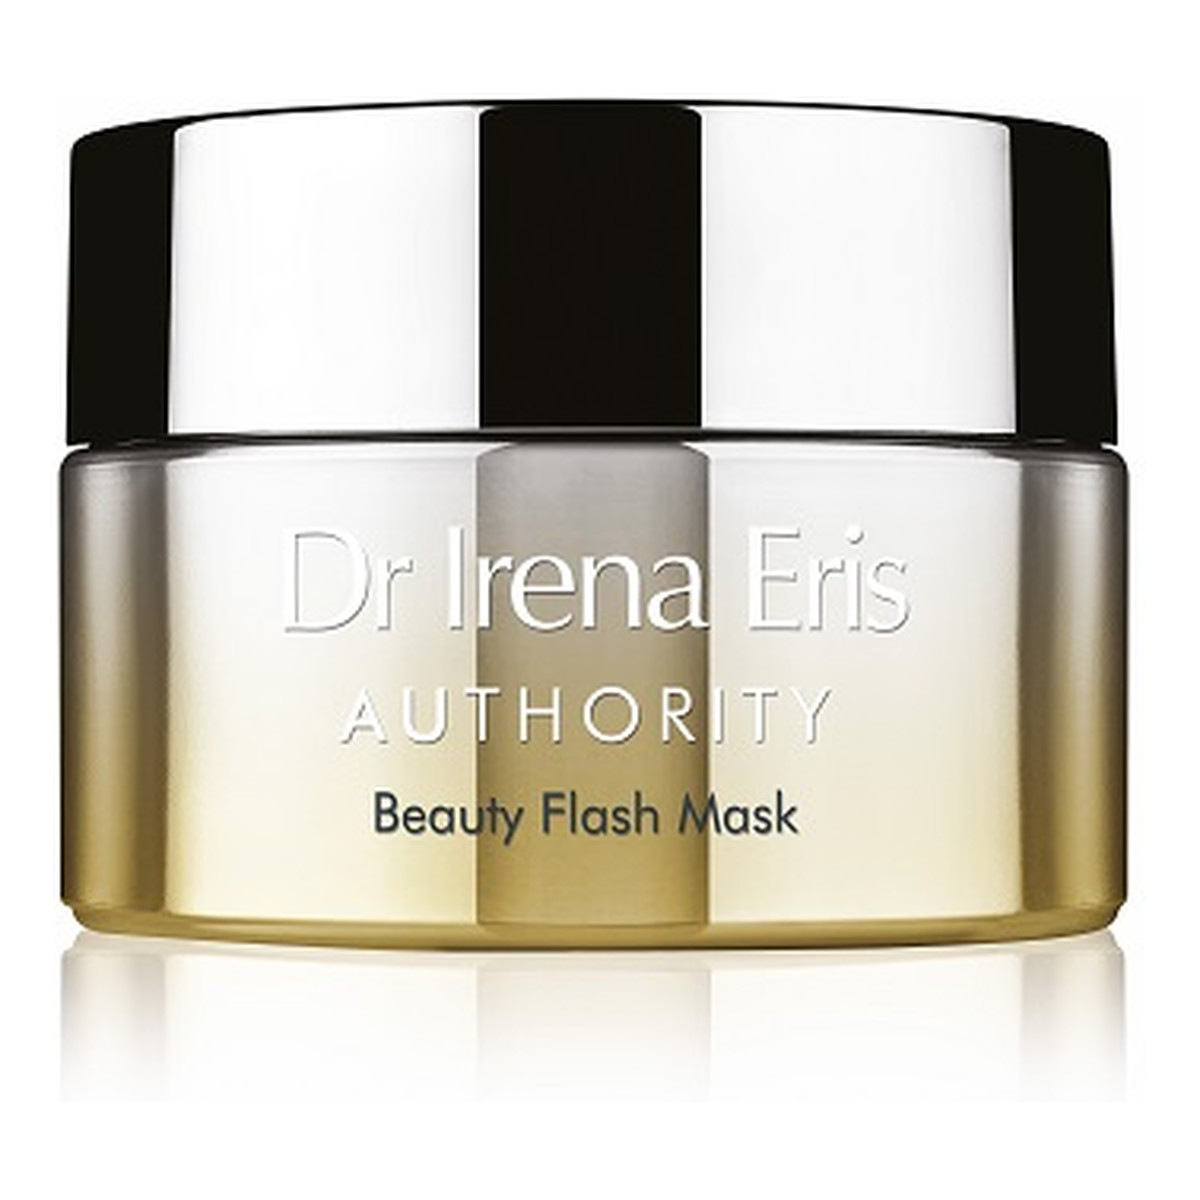 Dr Irena Eris Authority Beauty Flash Mask Błyskawiczna maska przywracająca blask i młodszy wygląd skóry 50ml